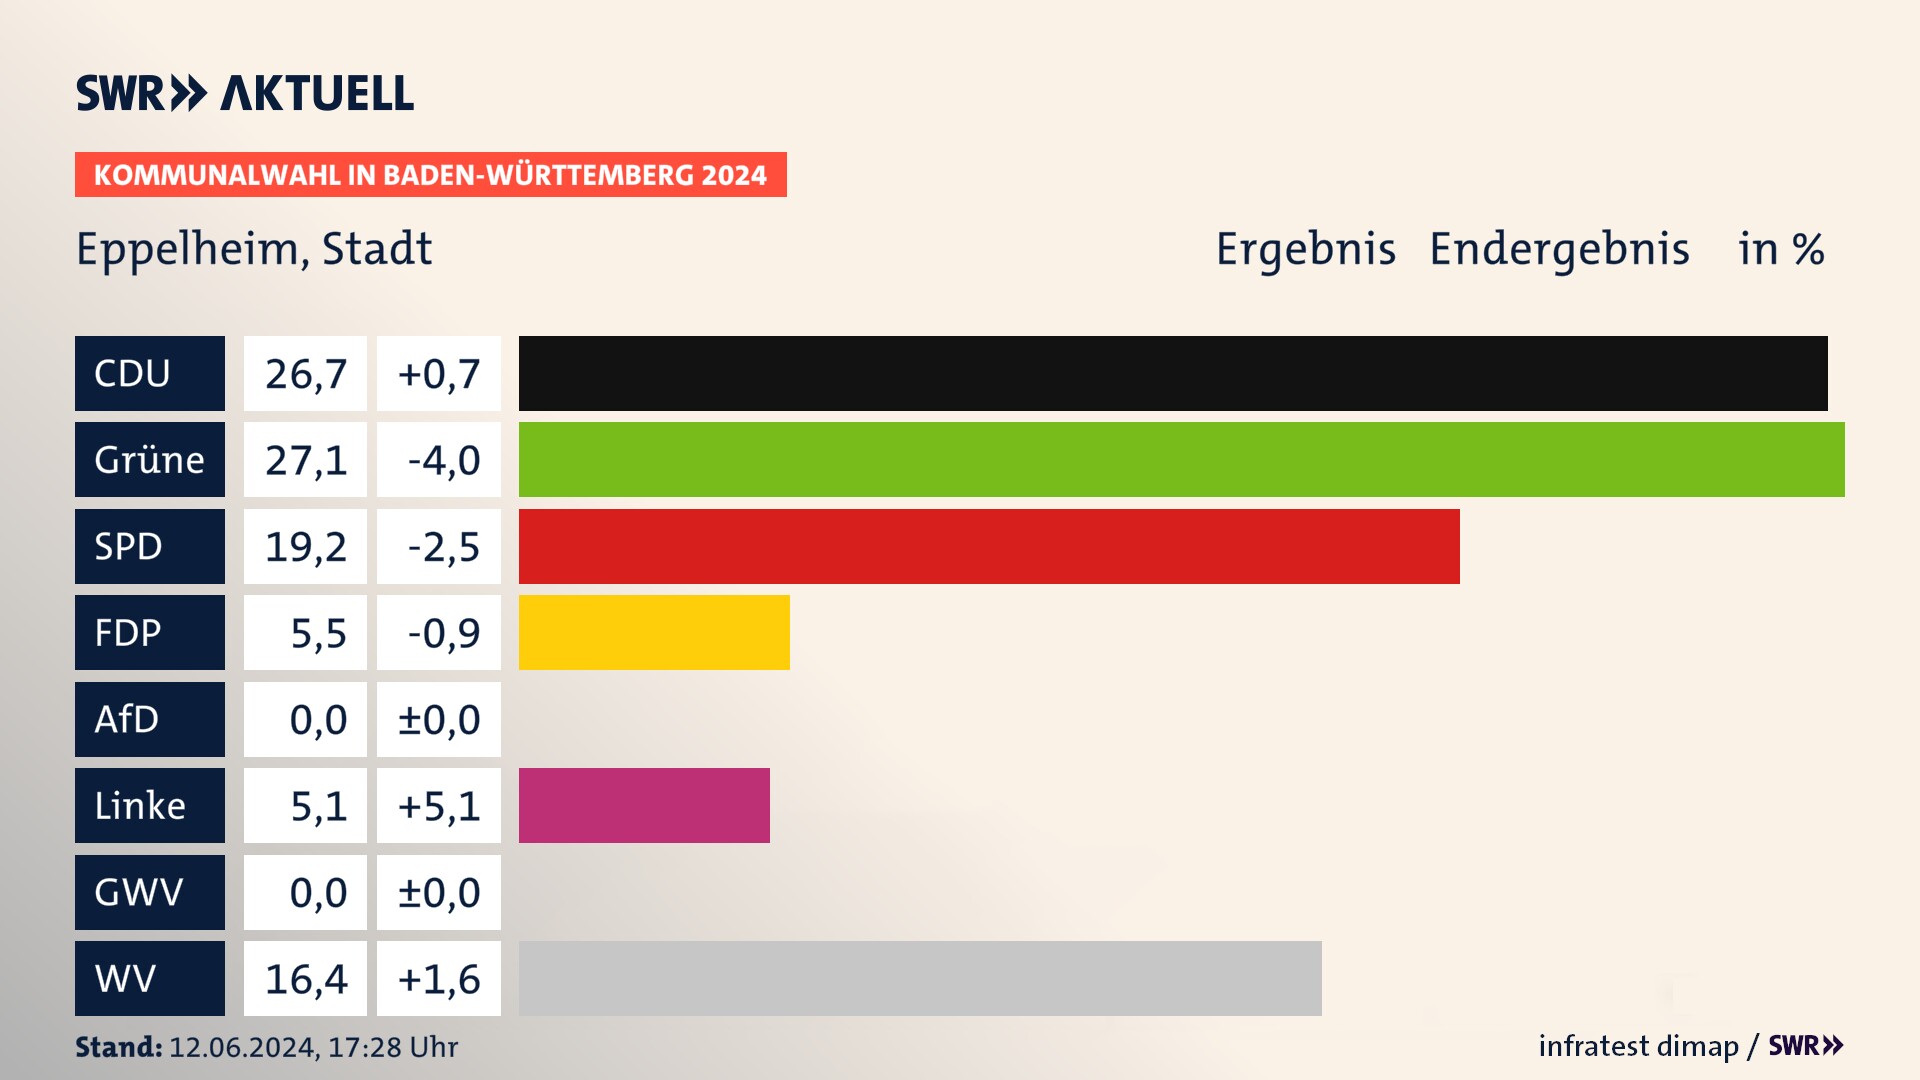 Kommunalwahl 2024 Endergebnis Zweitstimme für Eppelheim. In Eppelheim, Stadt erzielt die CDU 26,7 Prozent der gültigen  Stimmen. Die Grünen landen bei 27,1 Prozent. Die SPD erreicht 19,2 Prozent. Die FDP kommt auf 5,5 Prozent. Die Linke landet bei 5,1 Prozent. Die Wählervereinigungen erreichen 16,4 Prozent.